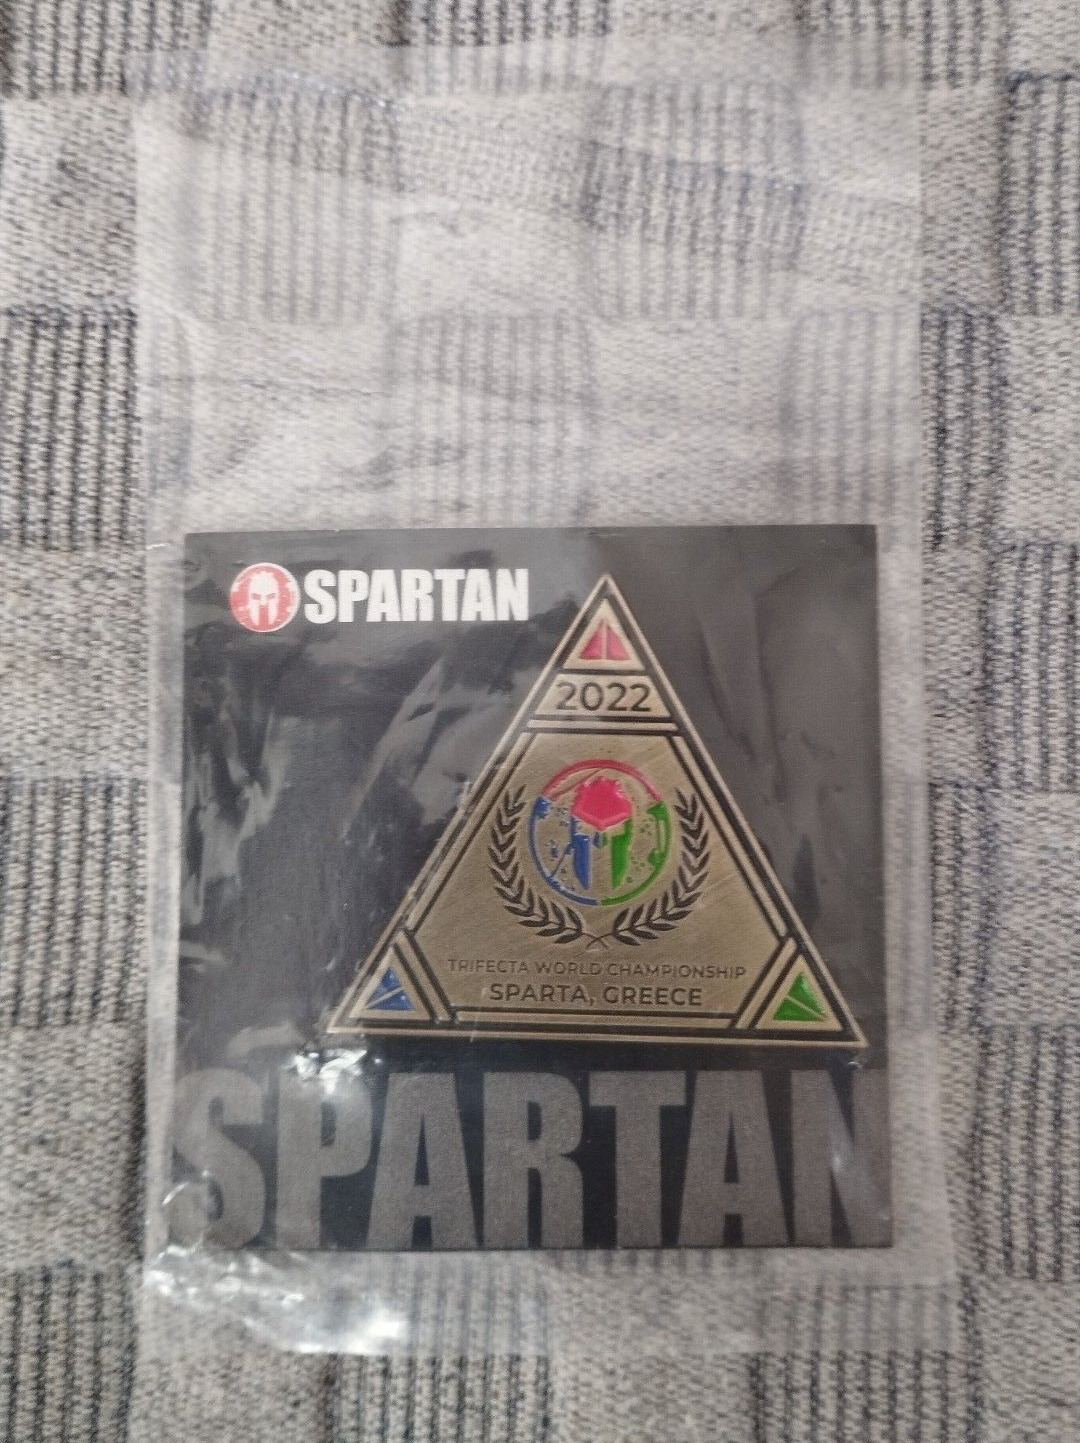 Spartan race coin, Sparta Greece 2022